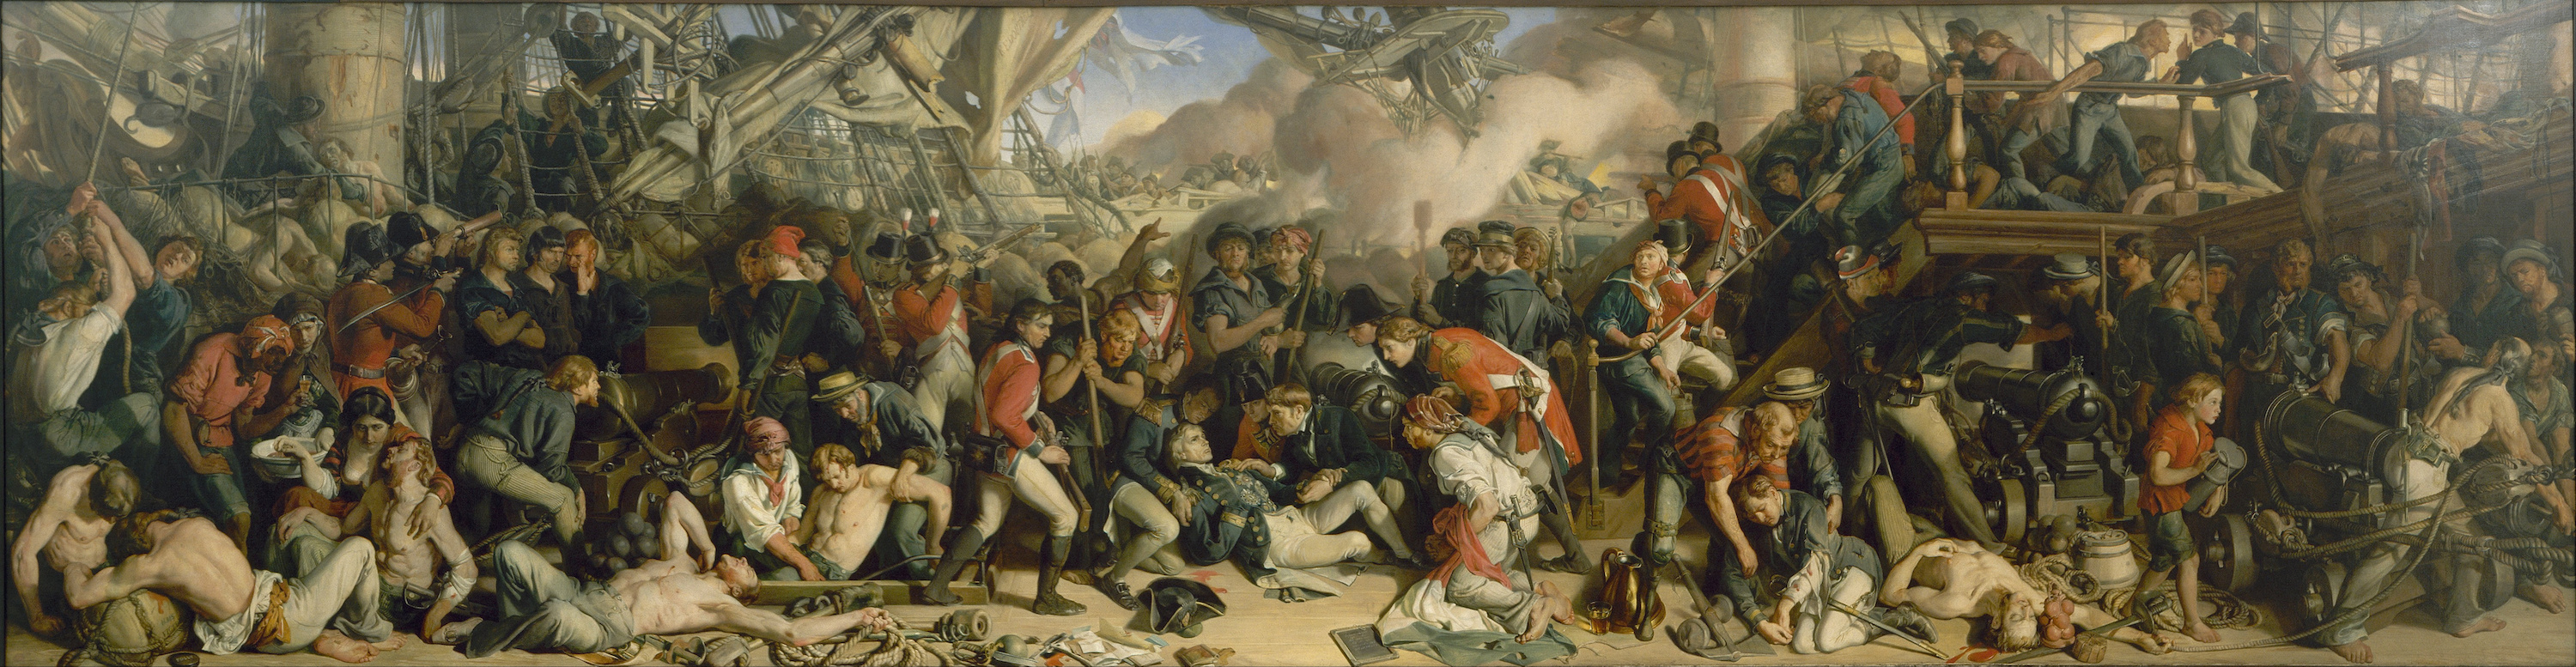 مرگِ نلسون by Daniel Maclise - 1859–1861 - 98.5 x 353 cm 